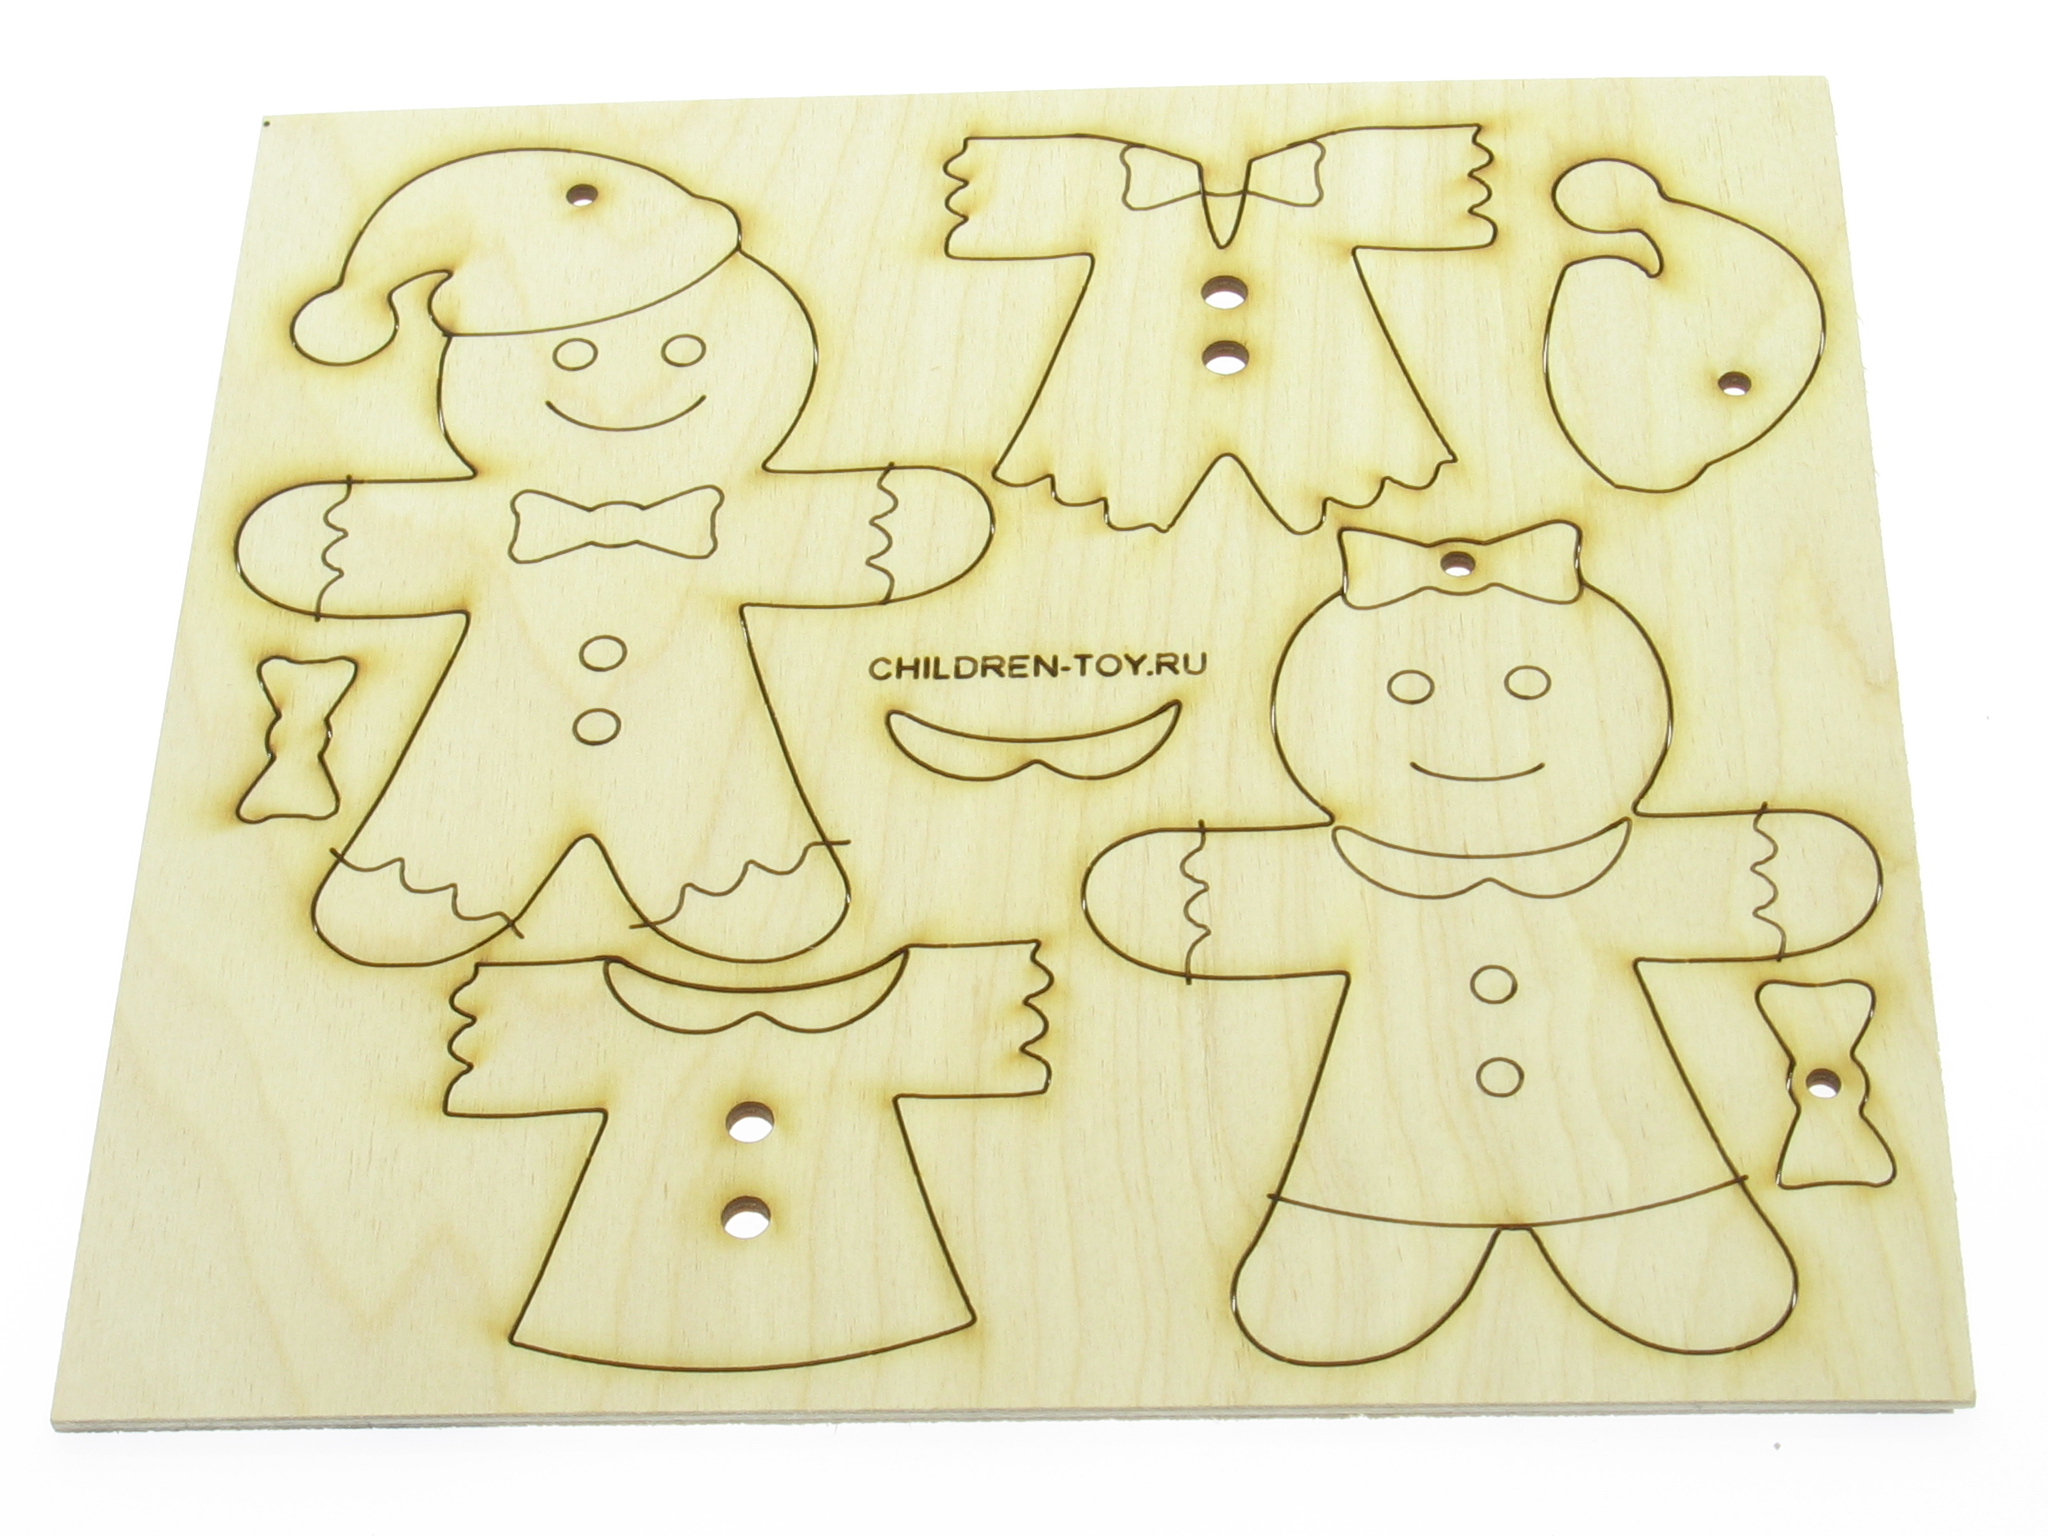 Инструкция по сборке своими руками поделки в садик и школу. Деревянный набор для творчества. Набор заготовок. Раскраска для детей из дерева.